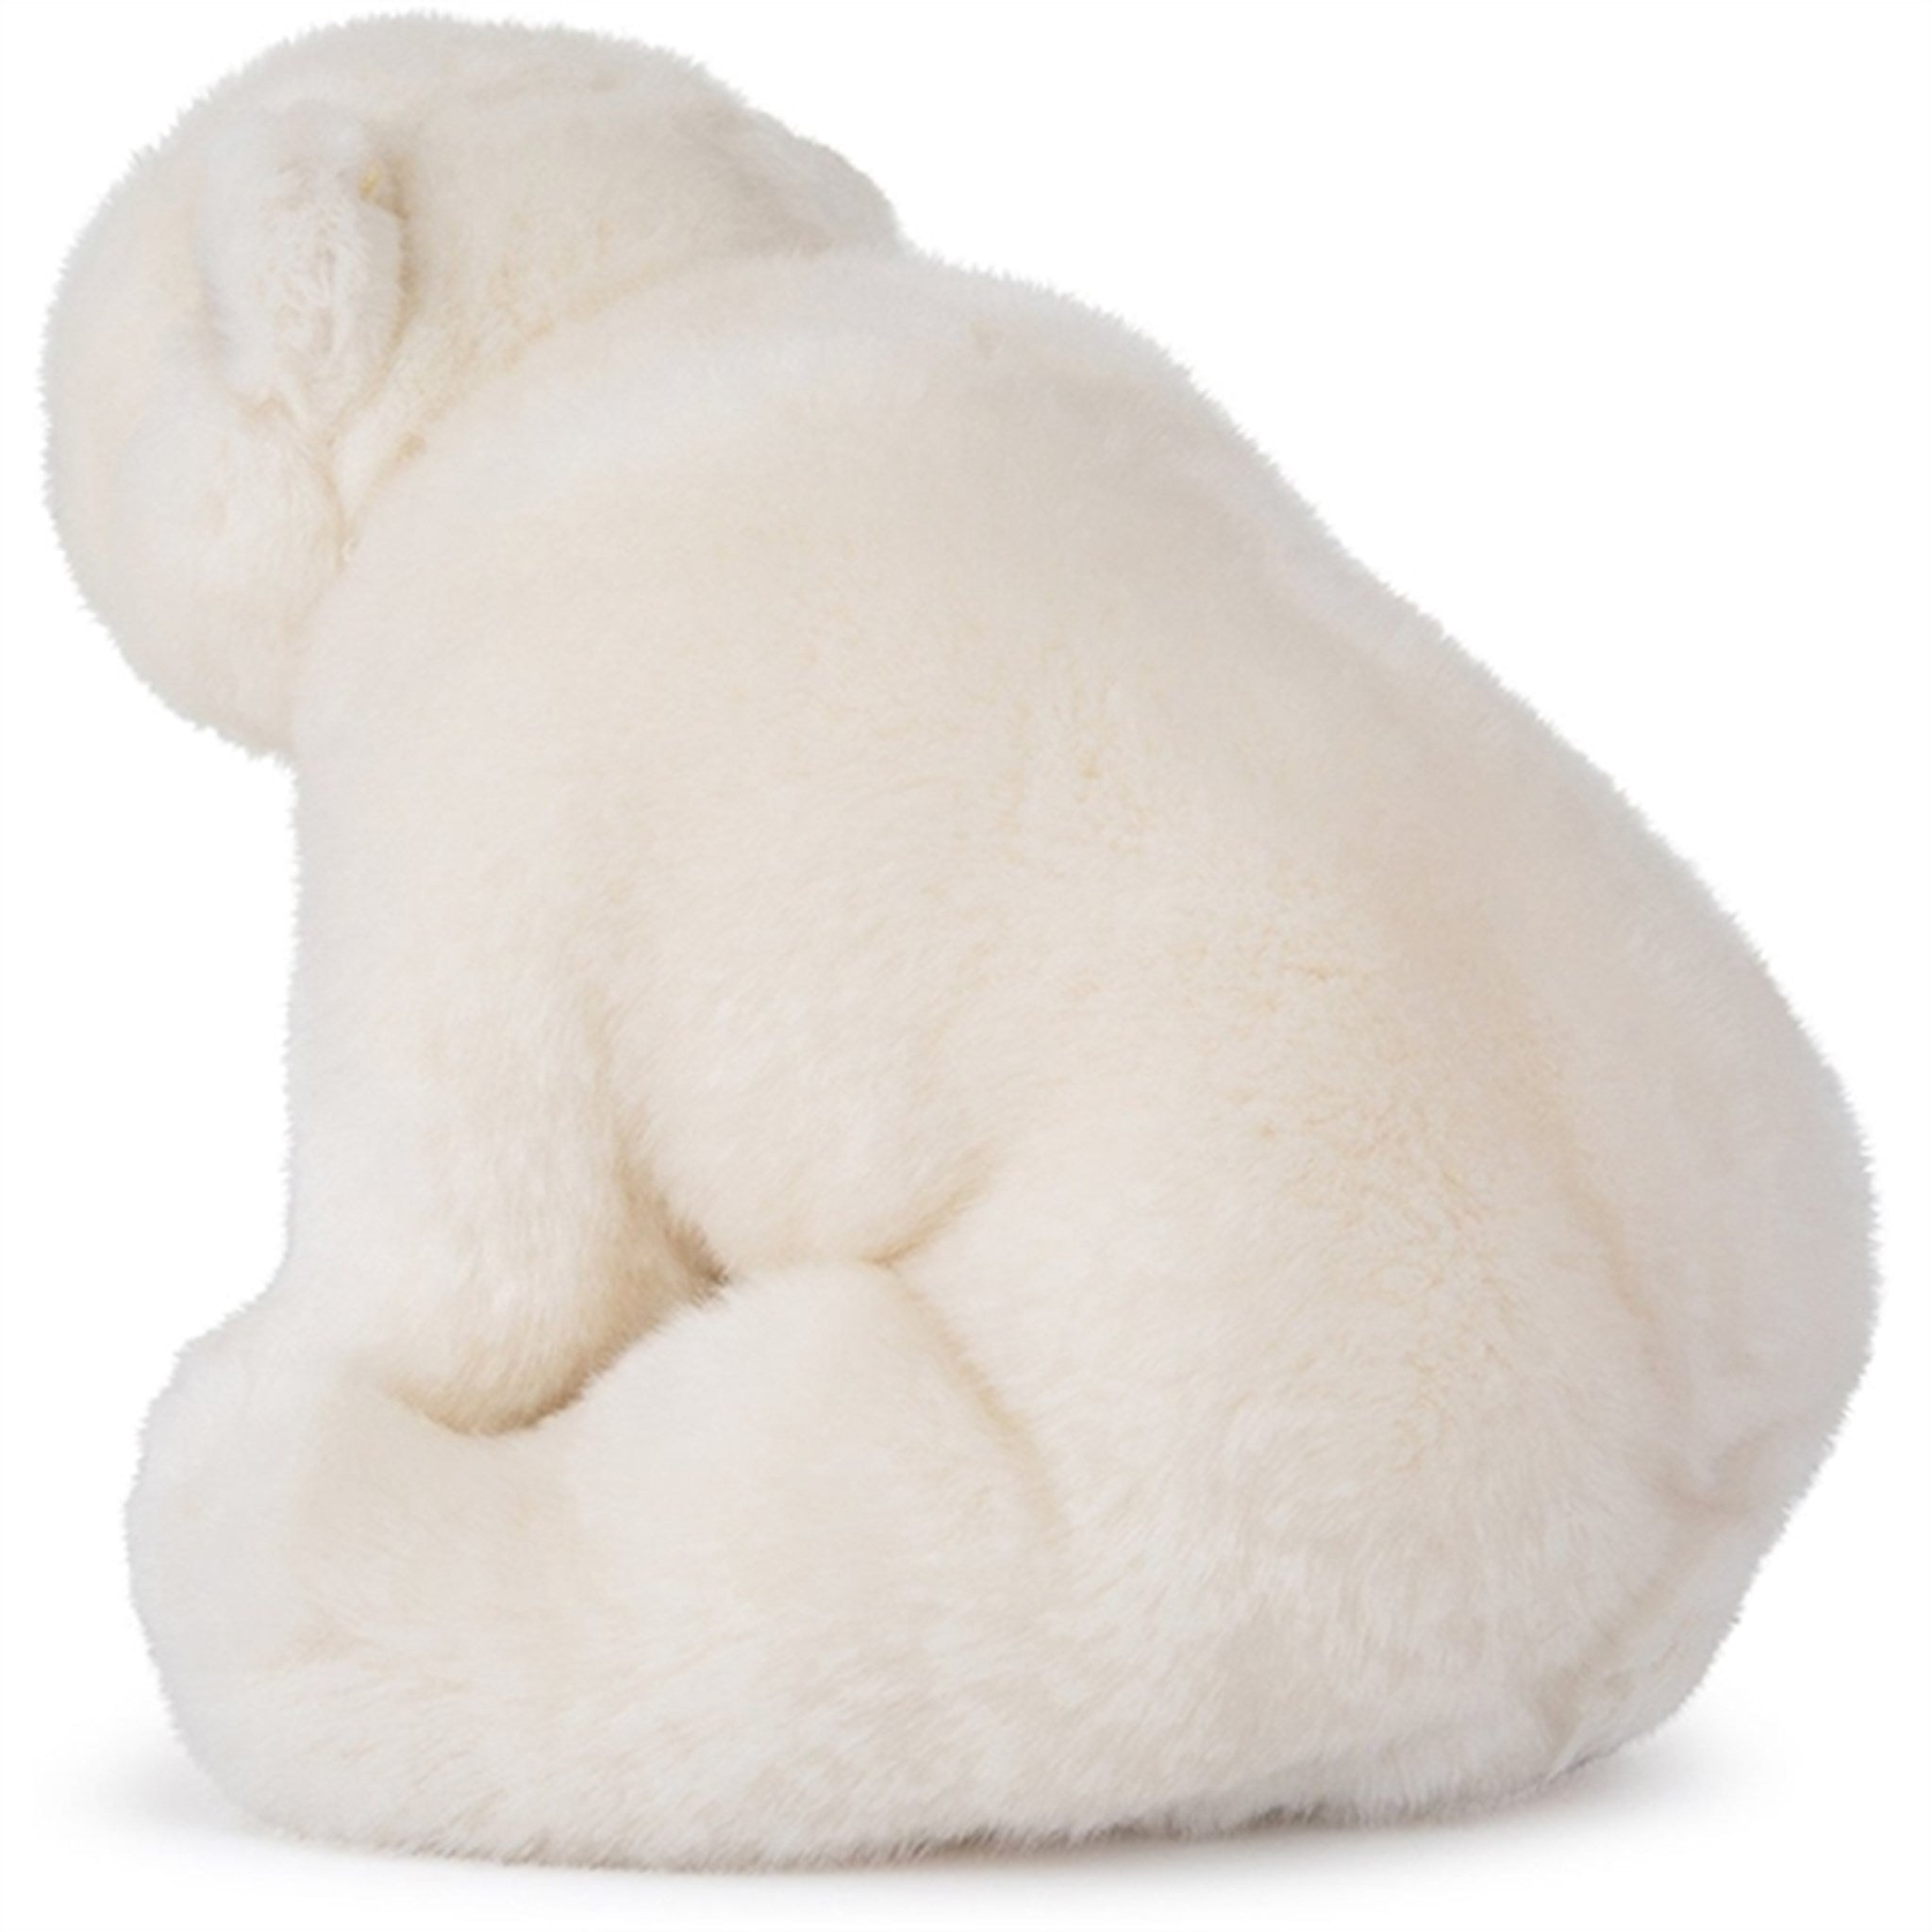 Bon Ton Toys WWF Plush Polar Bear 23 cm 3